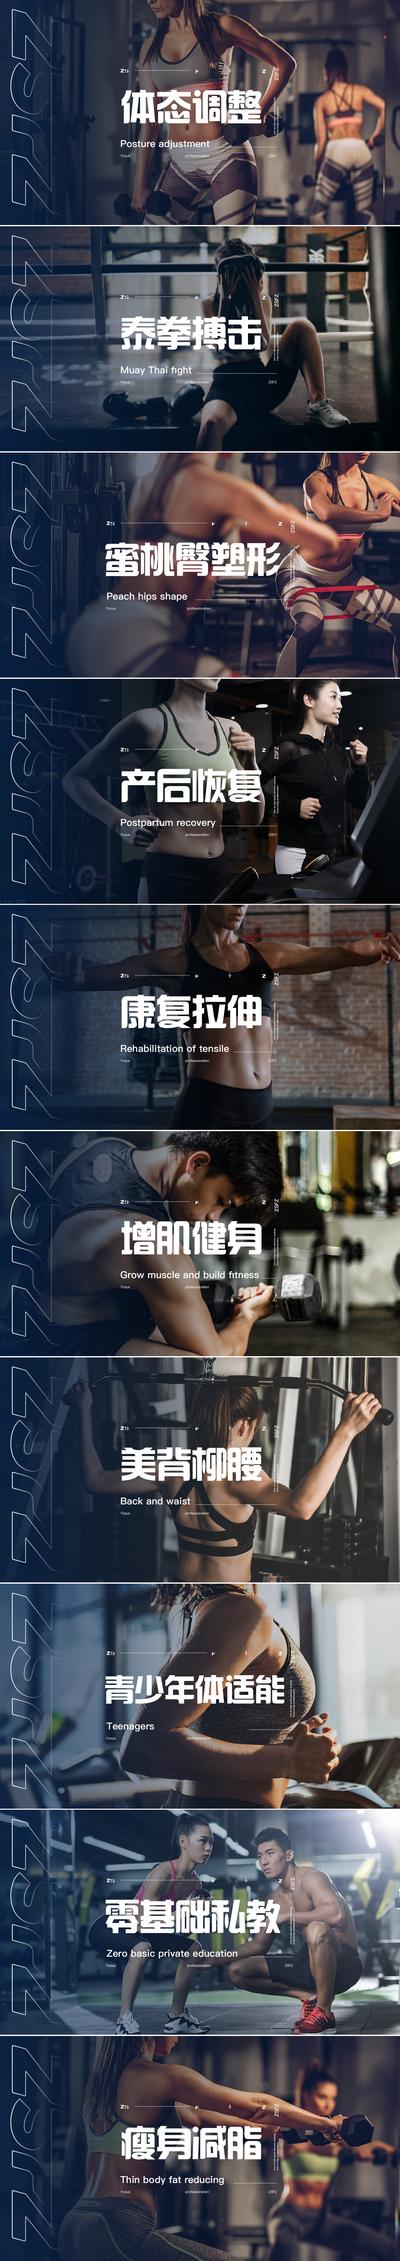 南门网 运动健身项目图banner